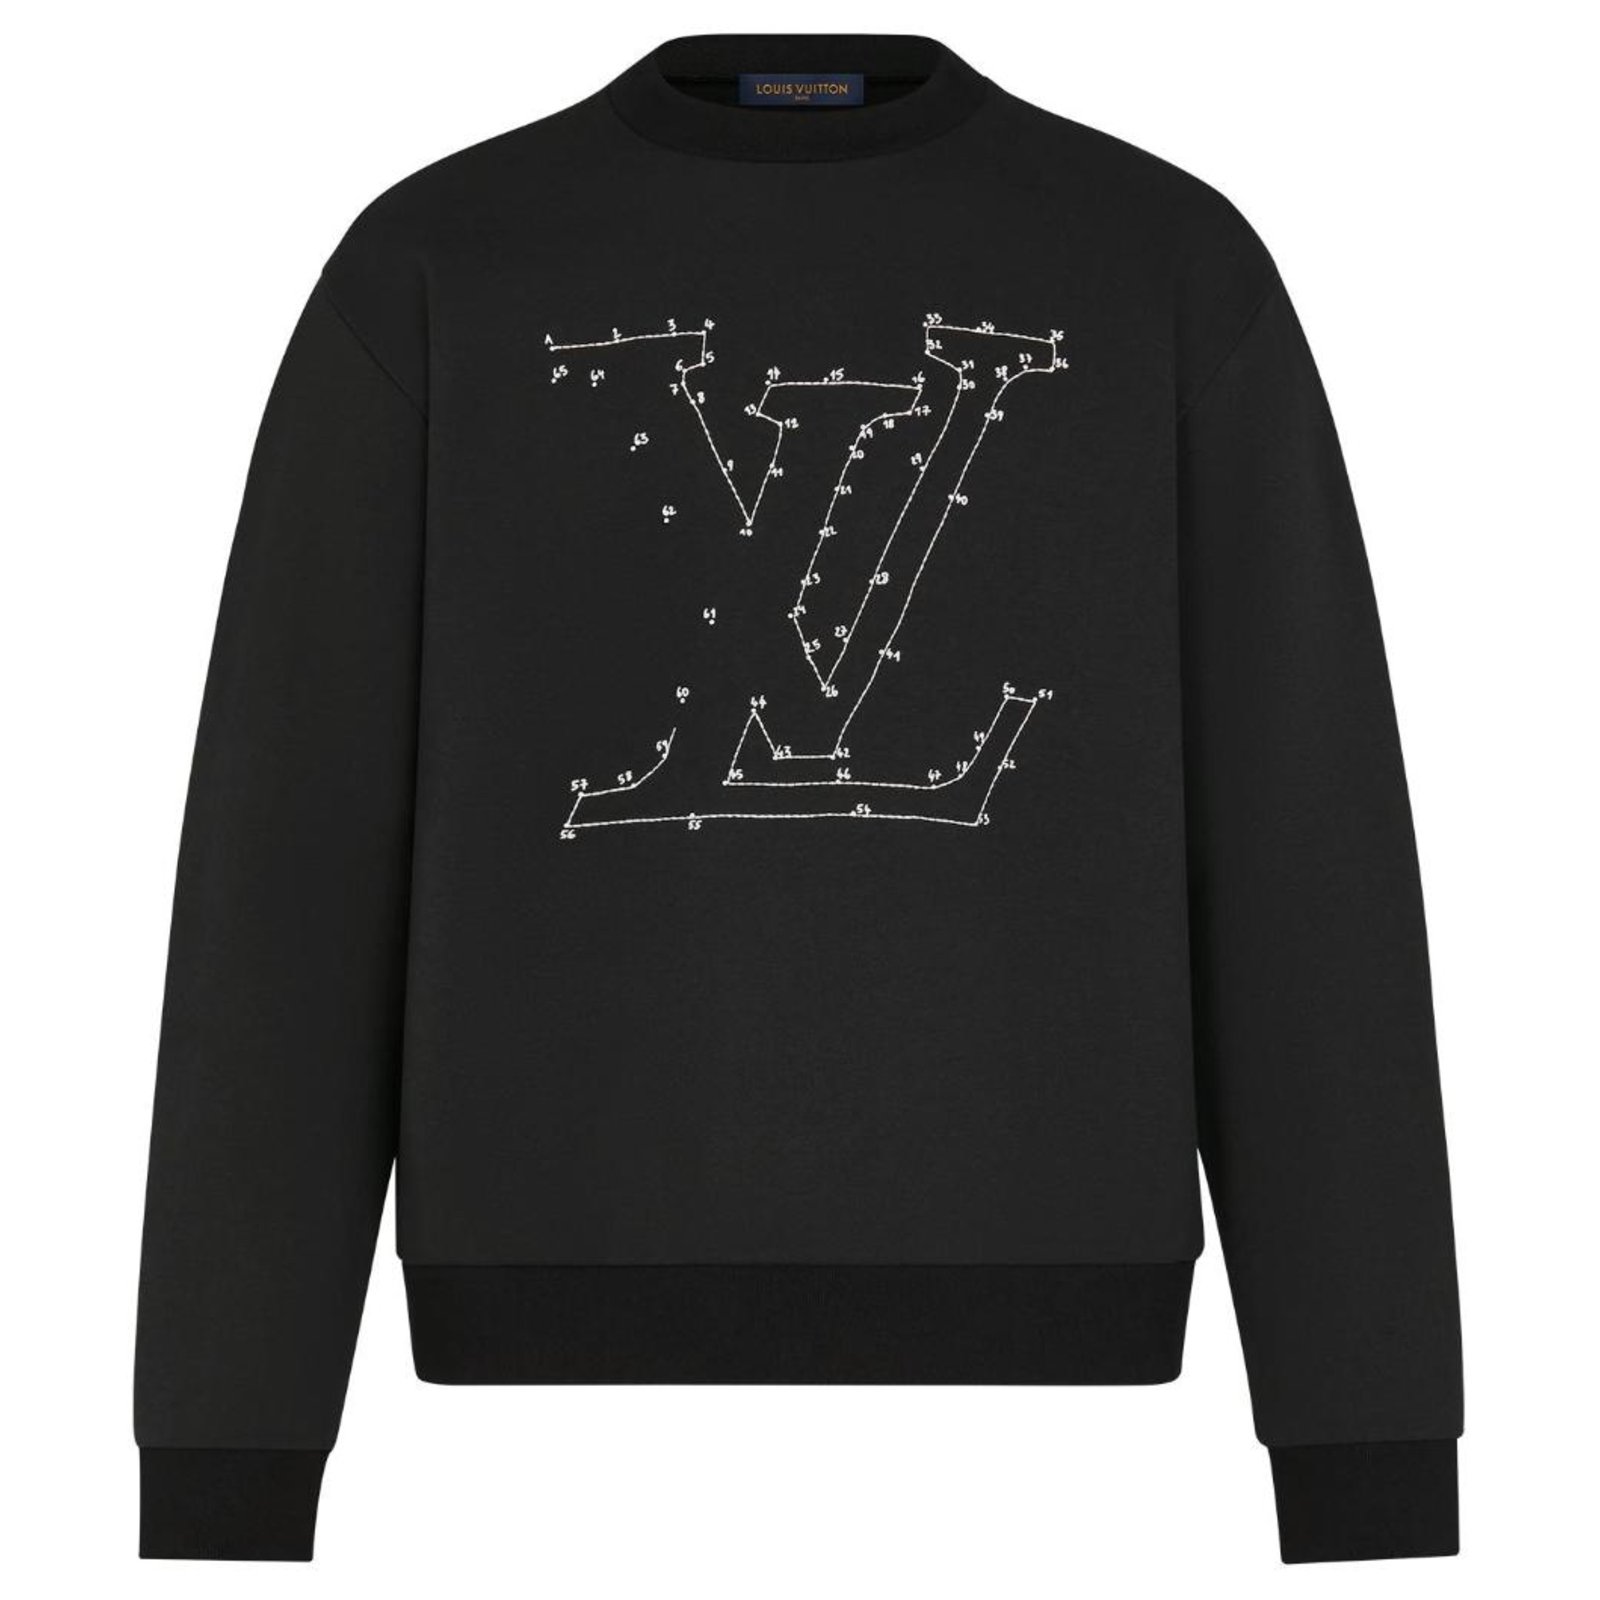 Louis Vuitton, Sweaters, Louis Vuitton Sweater Blk